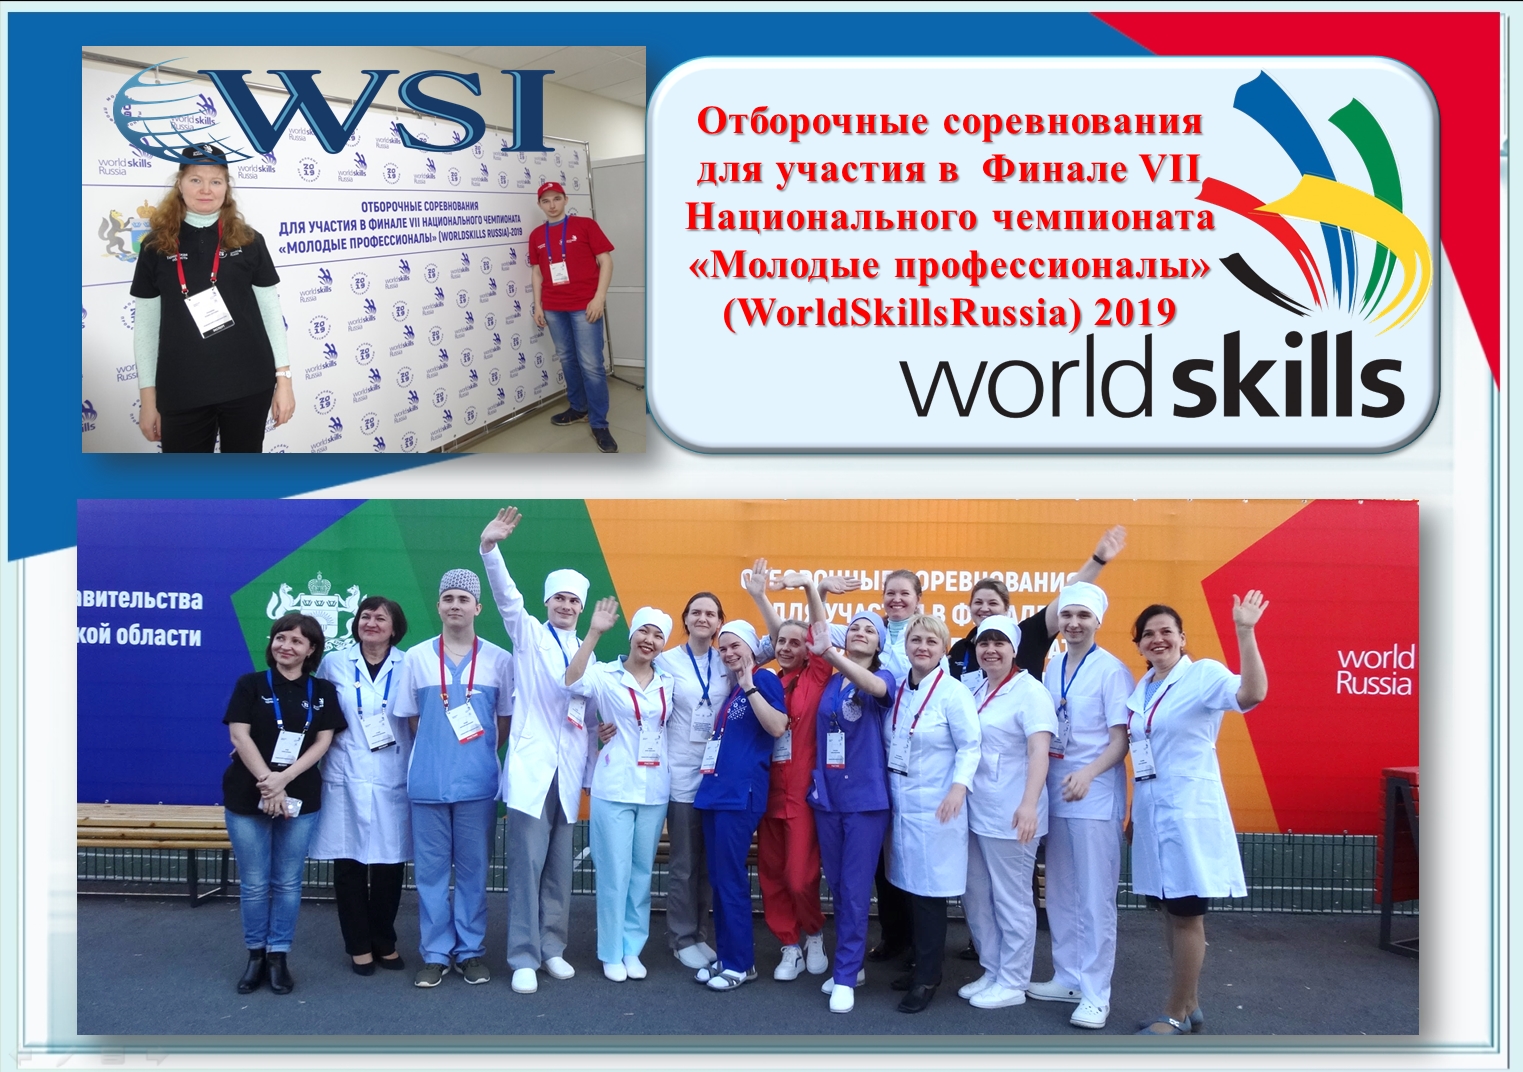 Отборочные соревнования для участия в  Финале VII Национального чемпионата «Молодые профессионалы» (WorldSkillsRussia) 2019